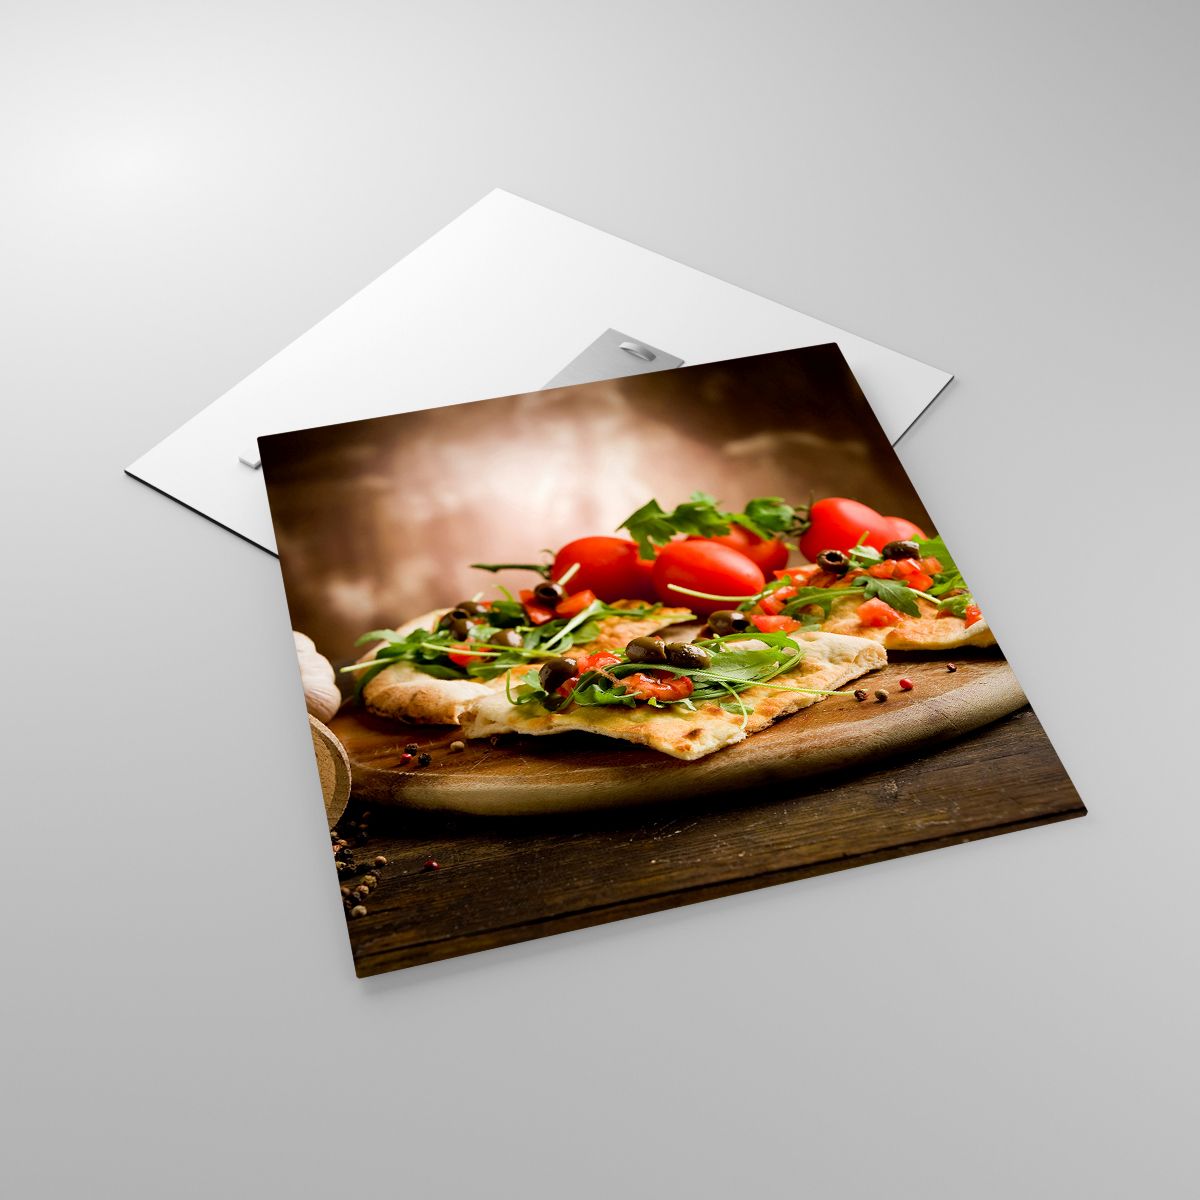 Glasbild Gastronomie, Glasbild Pizza, Glasbild Italien, Glasbild Küche, Glasbild Tomaten